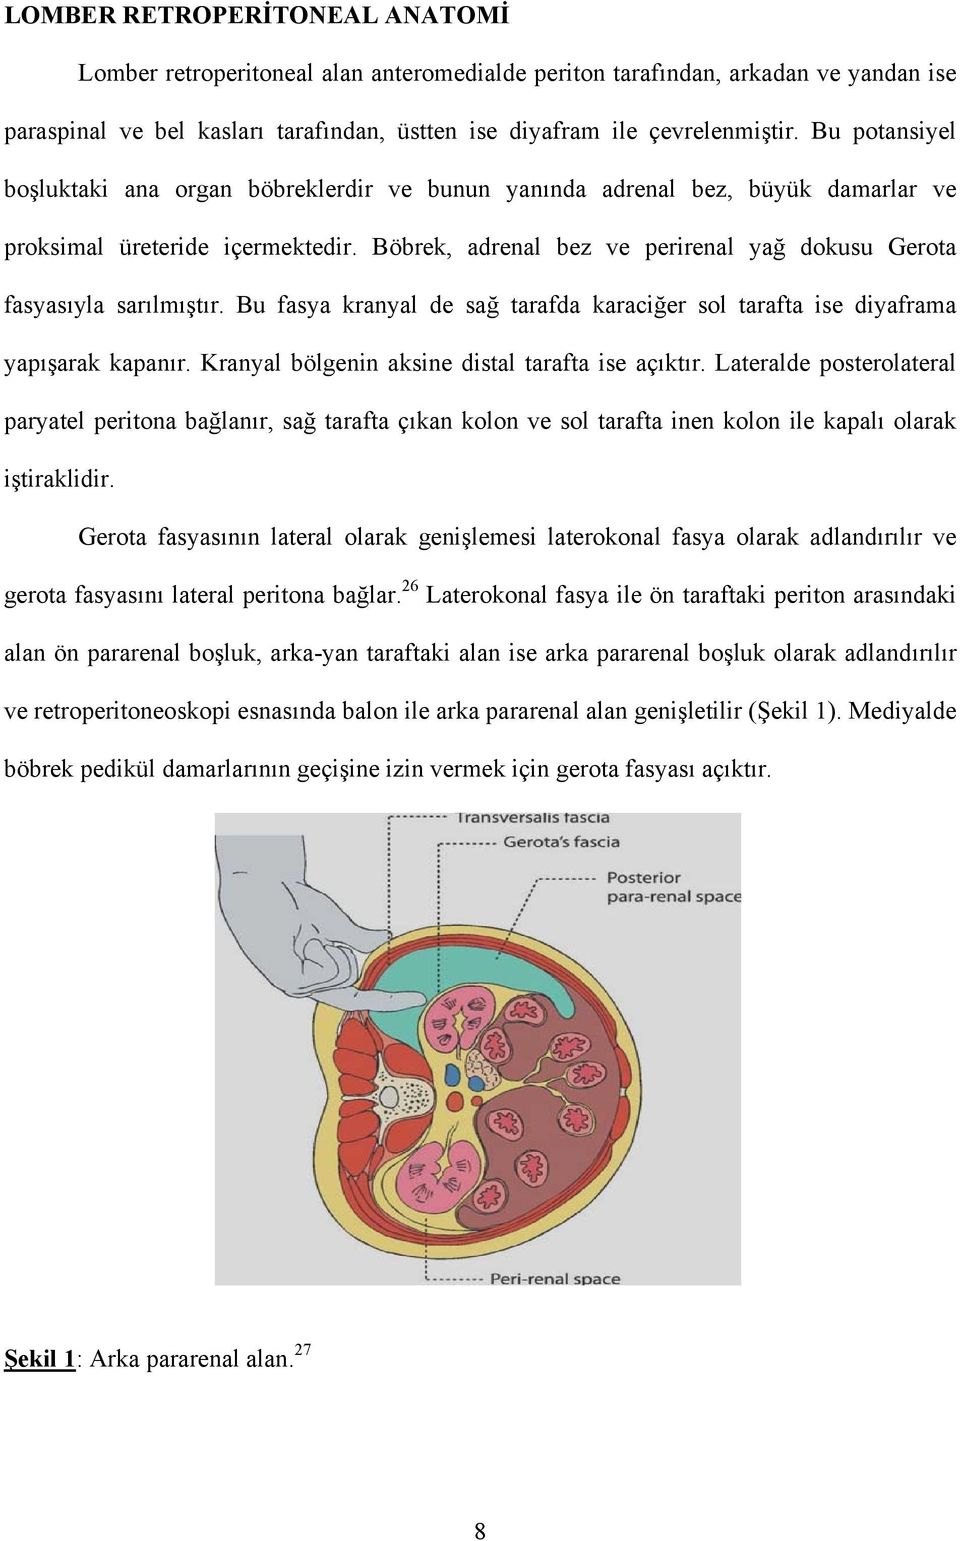 Böbrek, adrenal bez ve perirenal yağ dokusu Gerota fasyasıyla sarılmıştır. Bu fasya kranyal de sağ tarafda karaciğer sol tarafta ise diyaframa yapışarak kapanır.